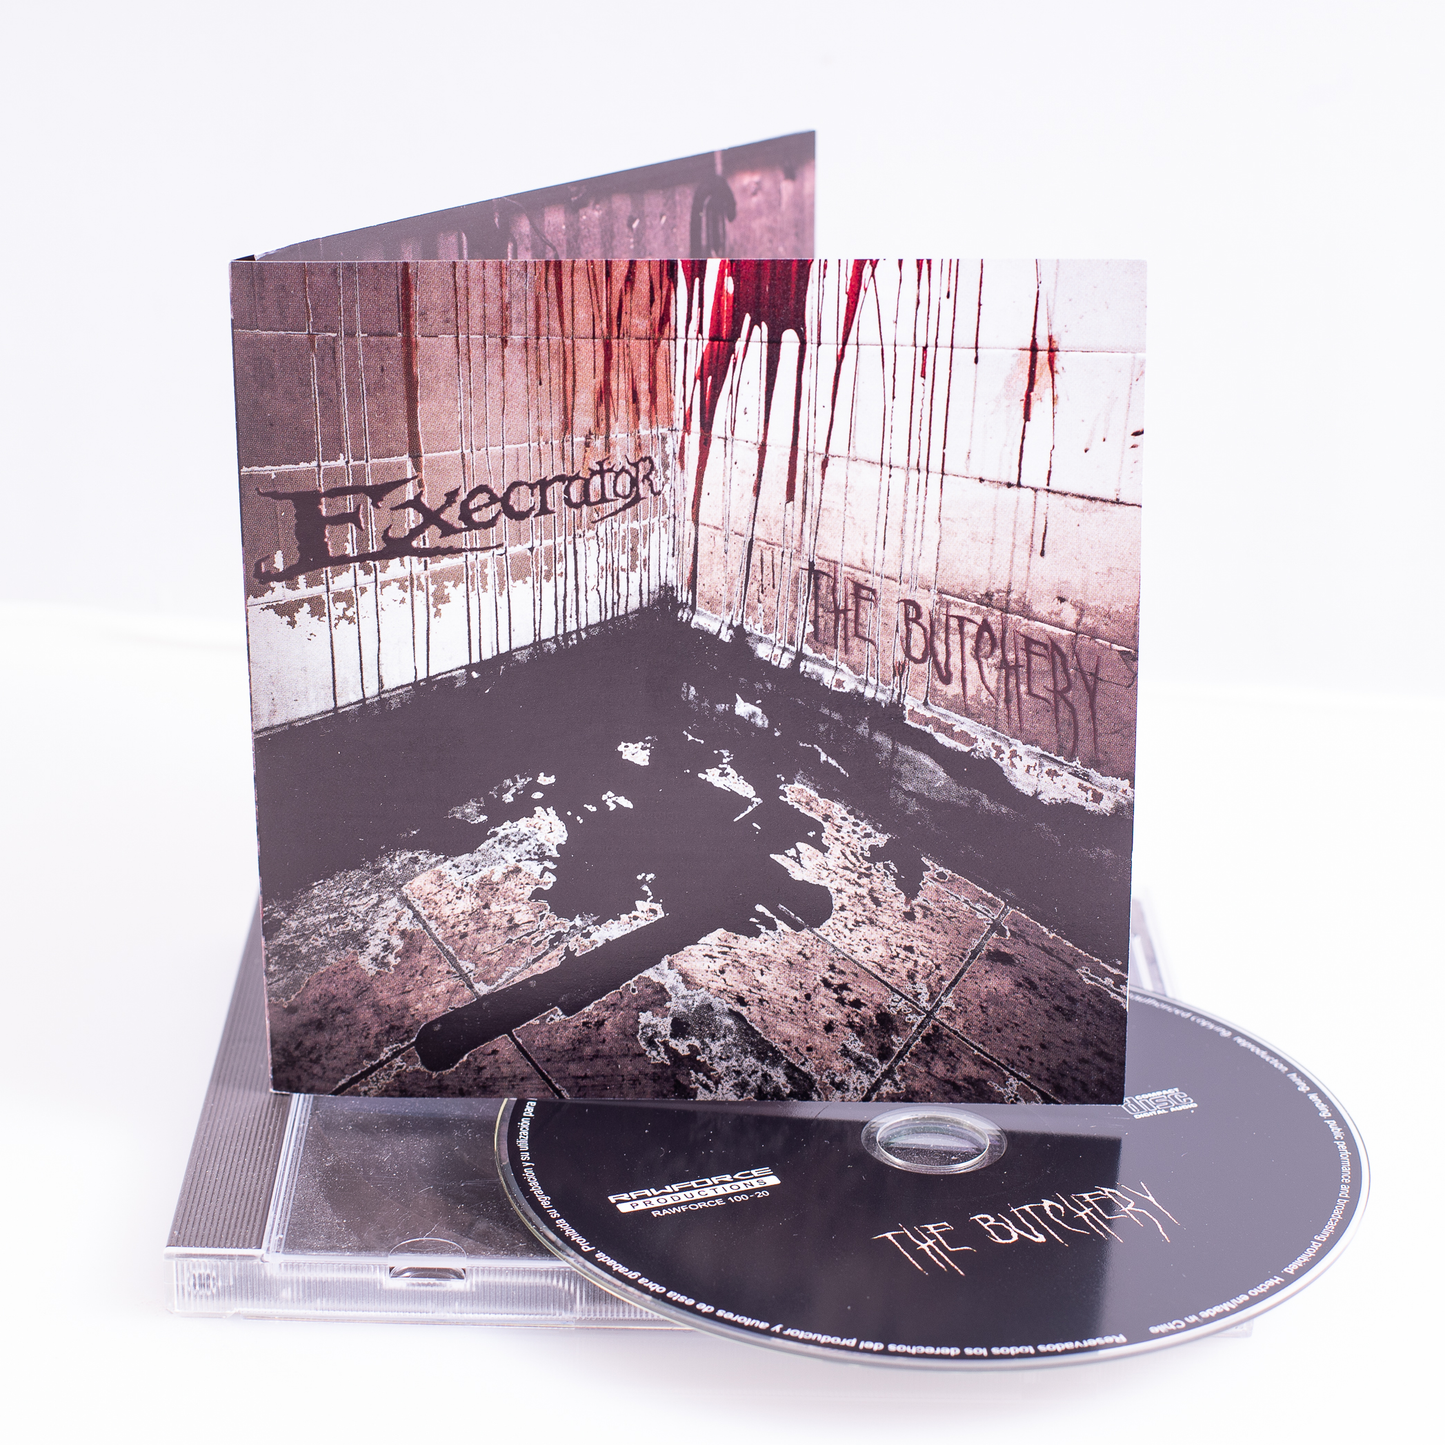 EXECRATOR - The Butchery (Jewel case)